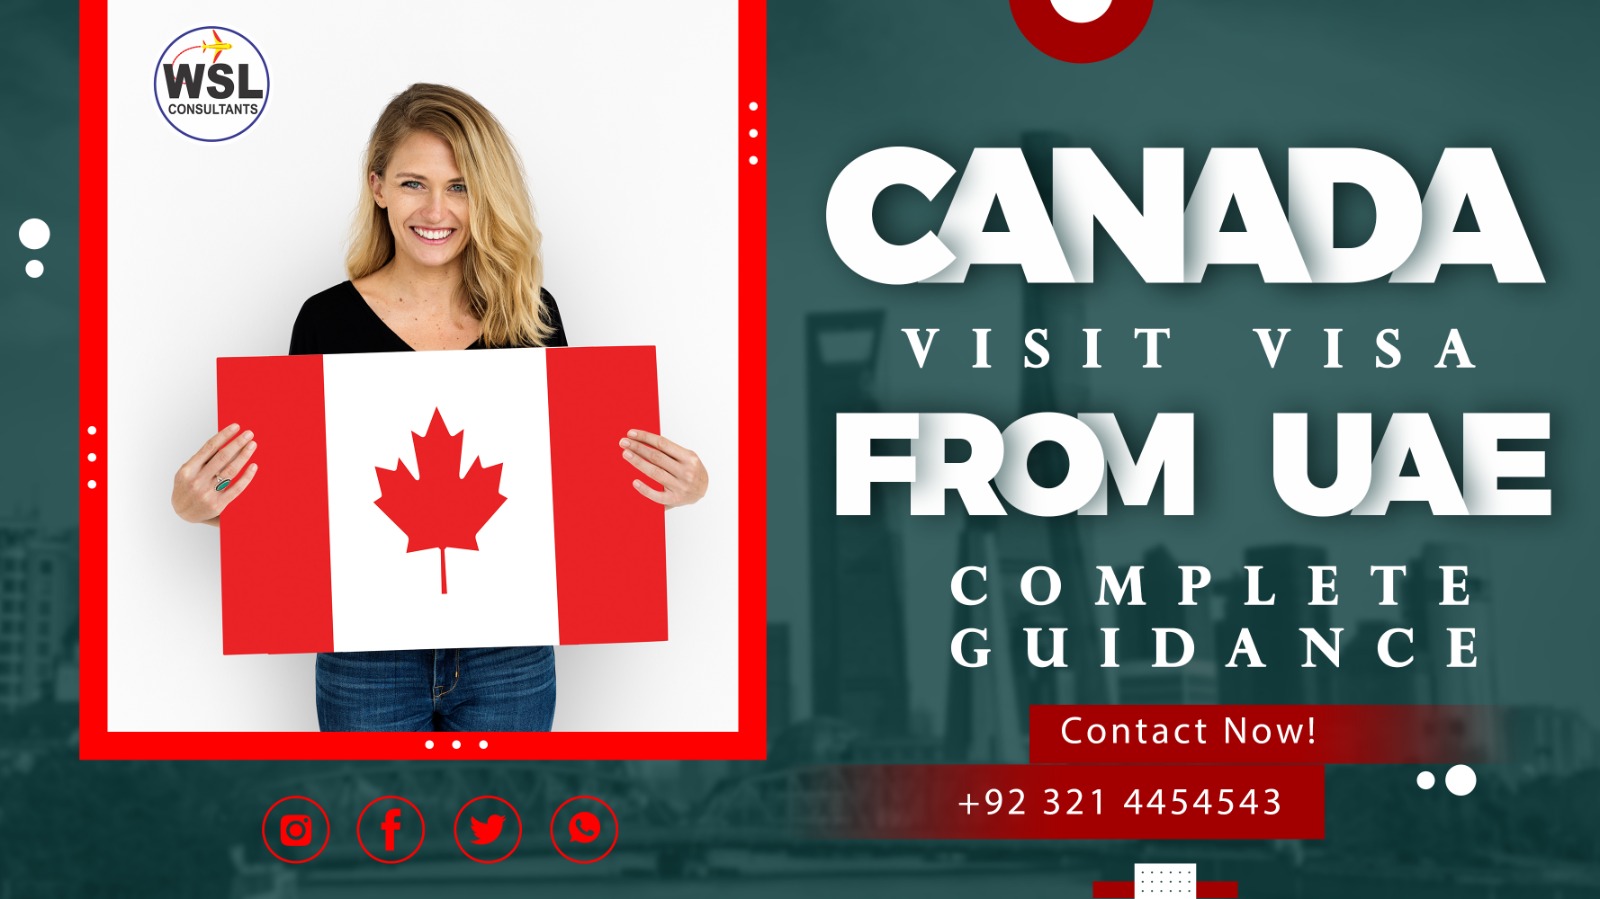 Canada visit visa from UAE